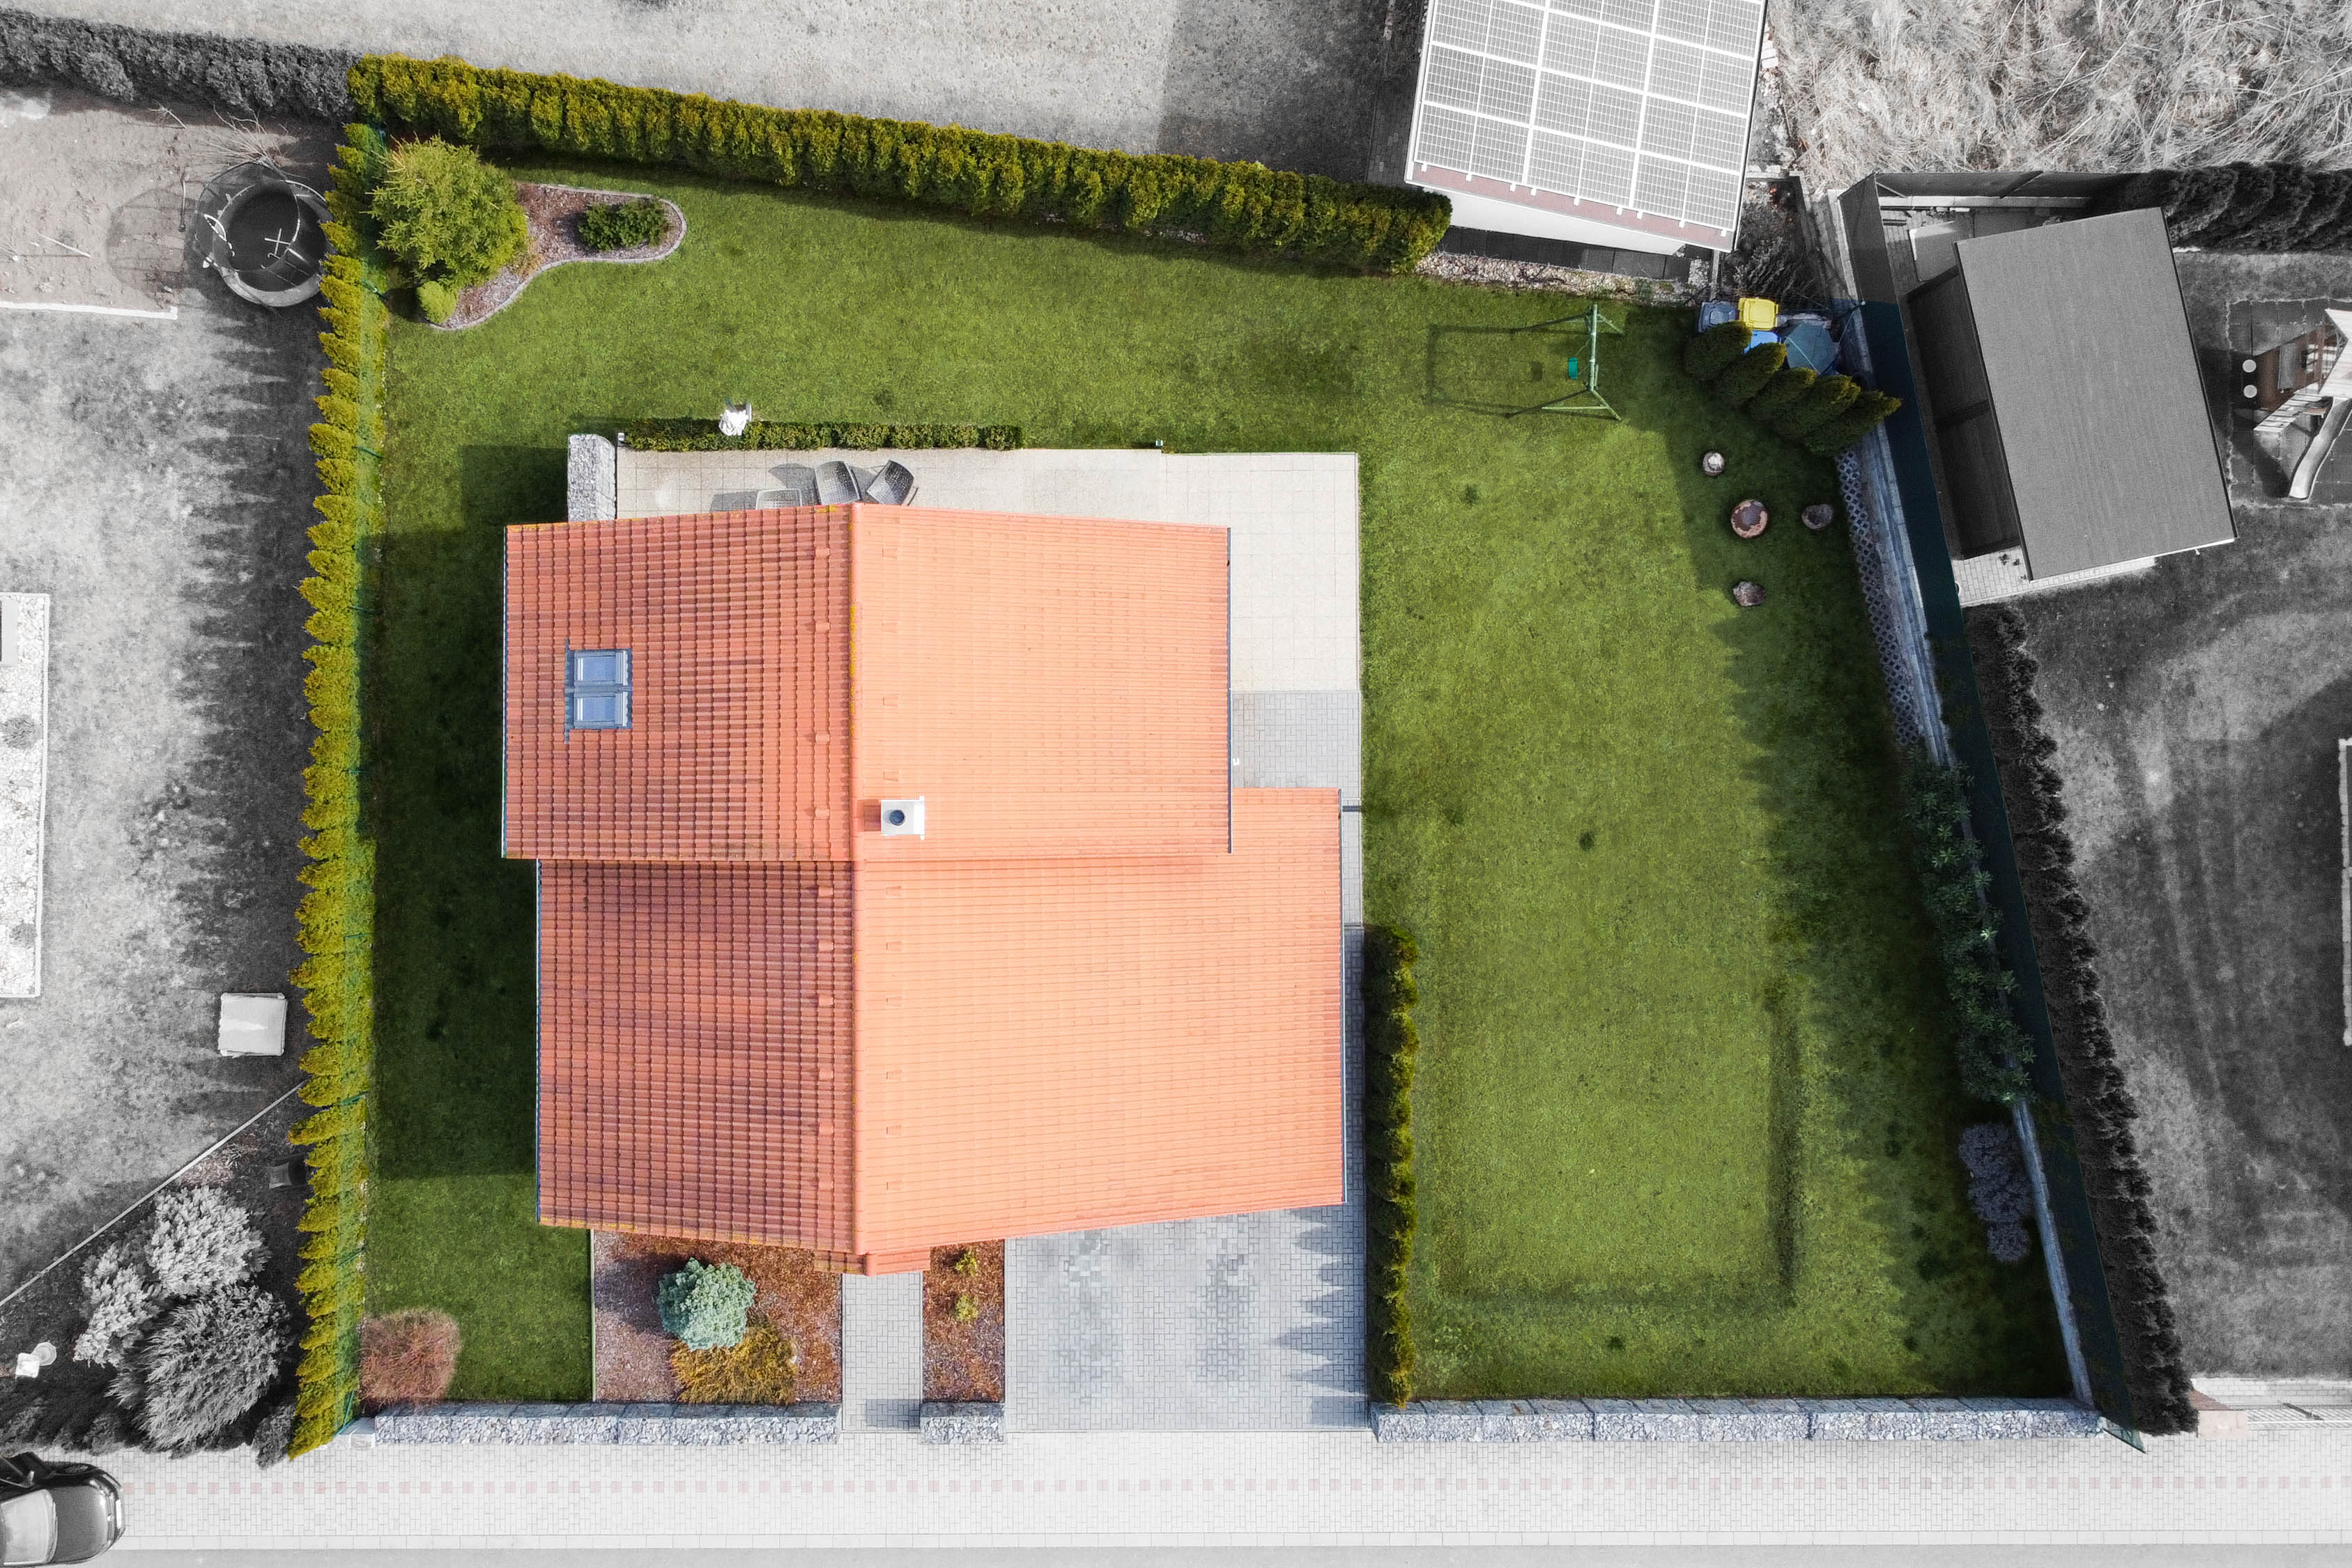 rodinný dům z dronu s vyznačením hranic pozemku